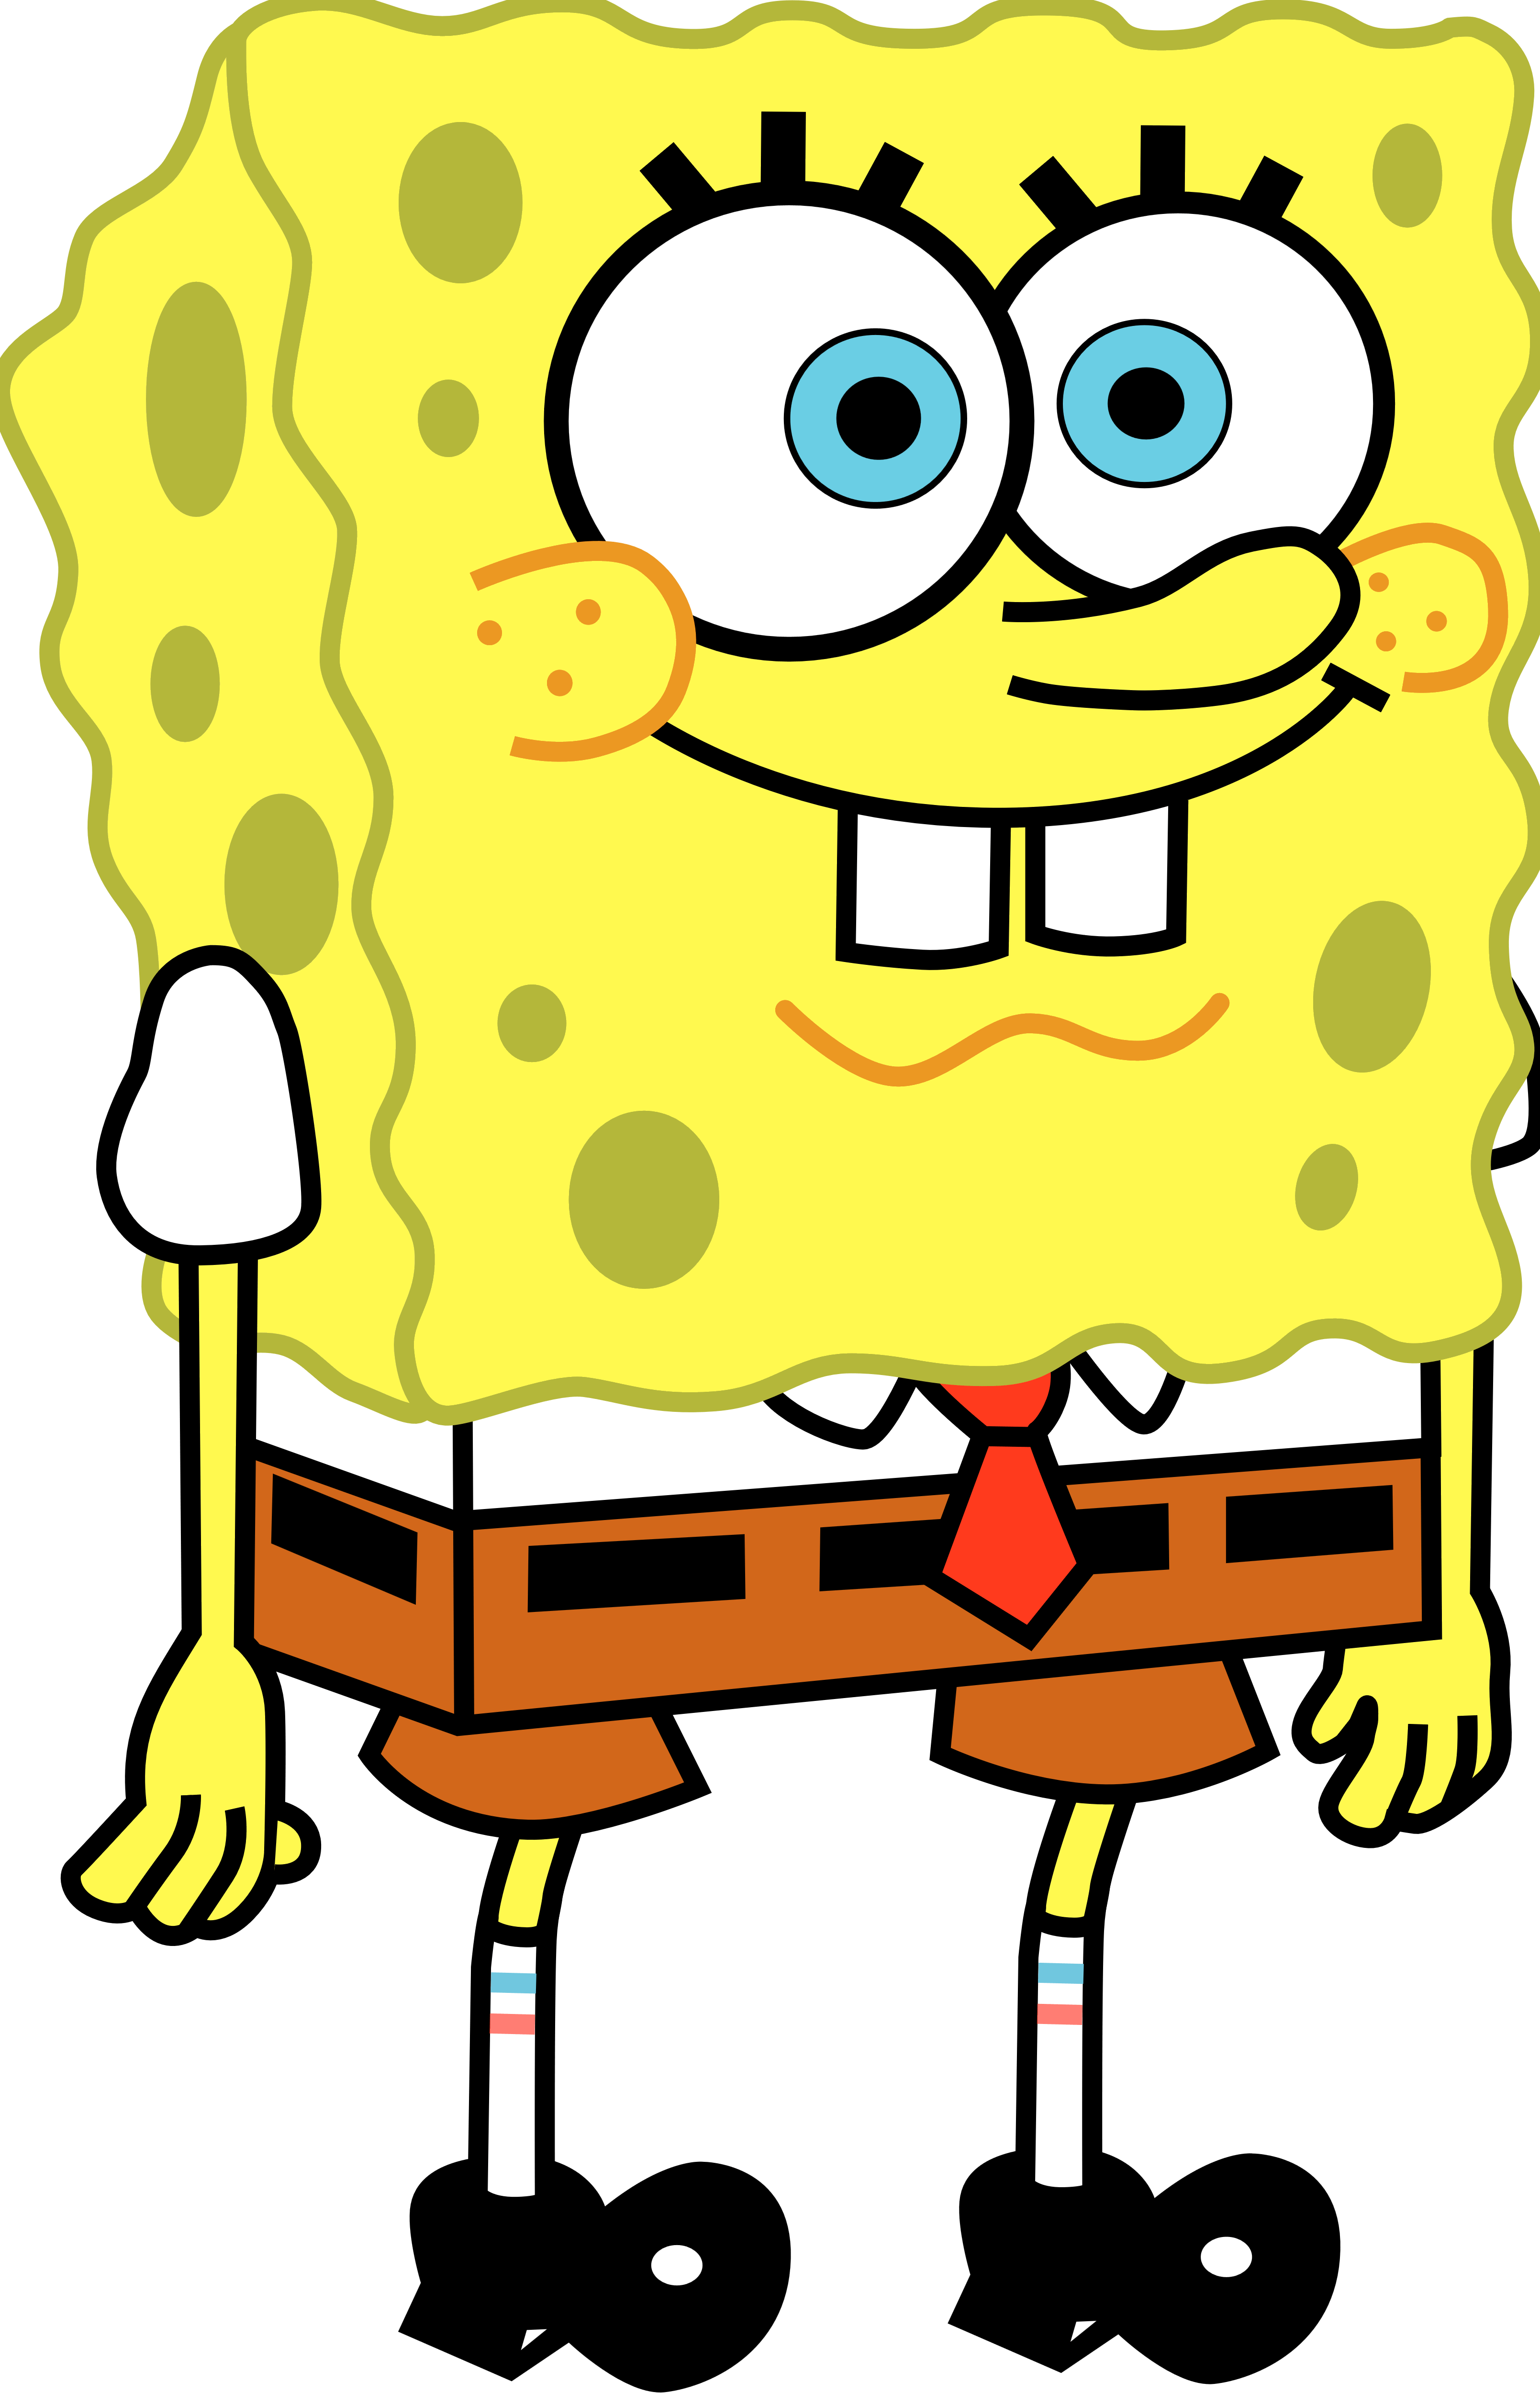 Spongebob SquarePants Logo - SpongeBob SquarePants – Logos Download